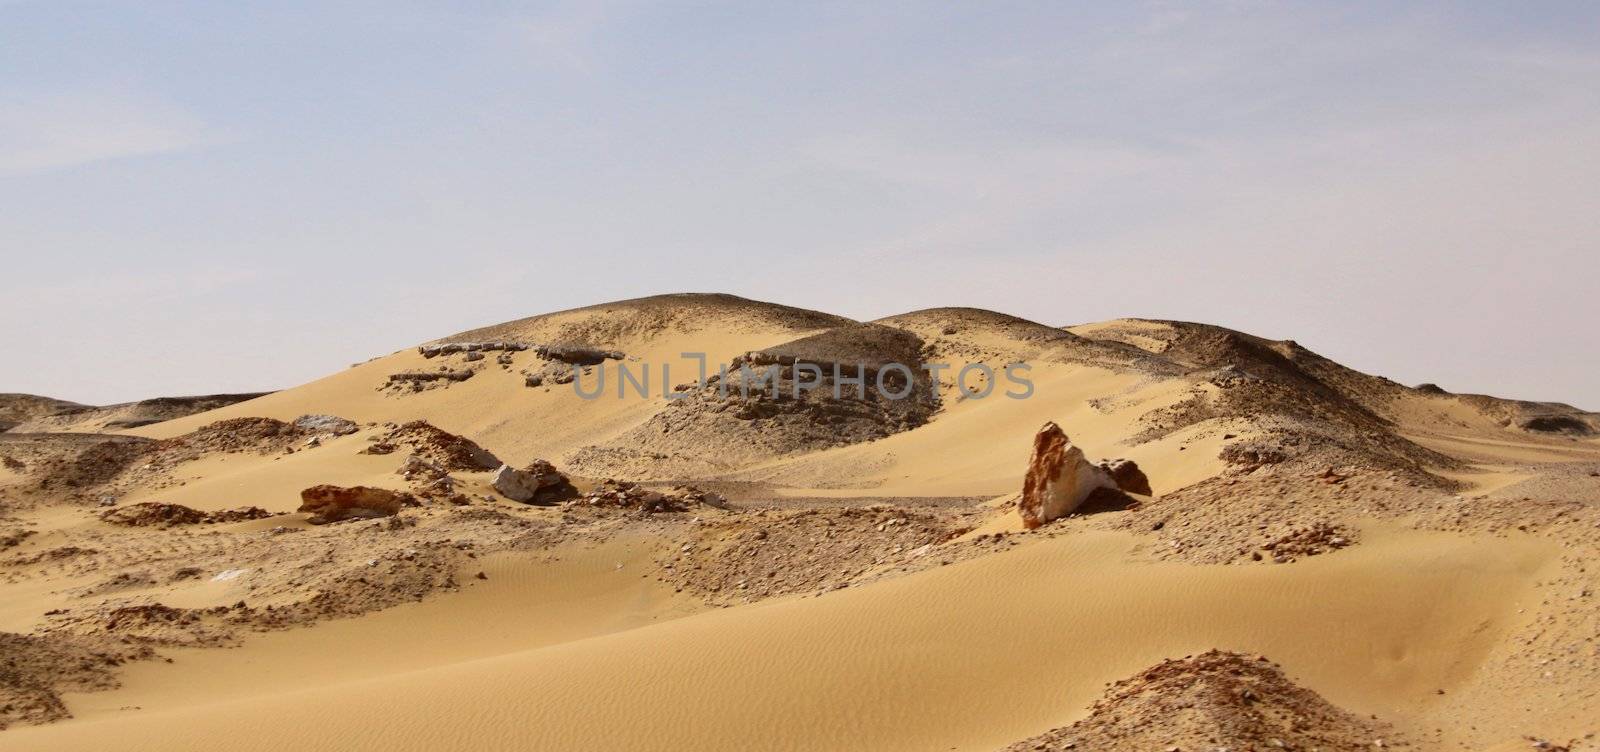 Lybian desert in Egypt